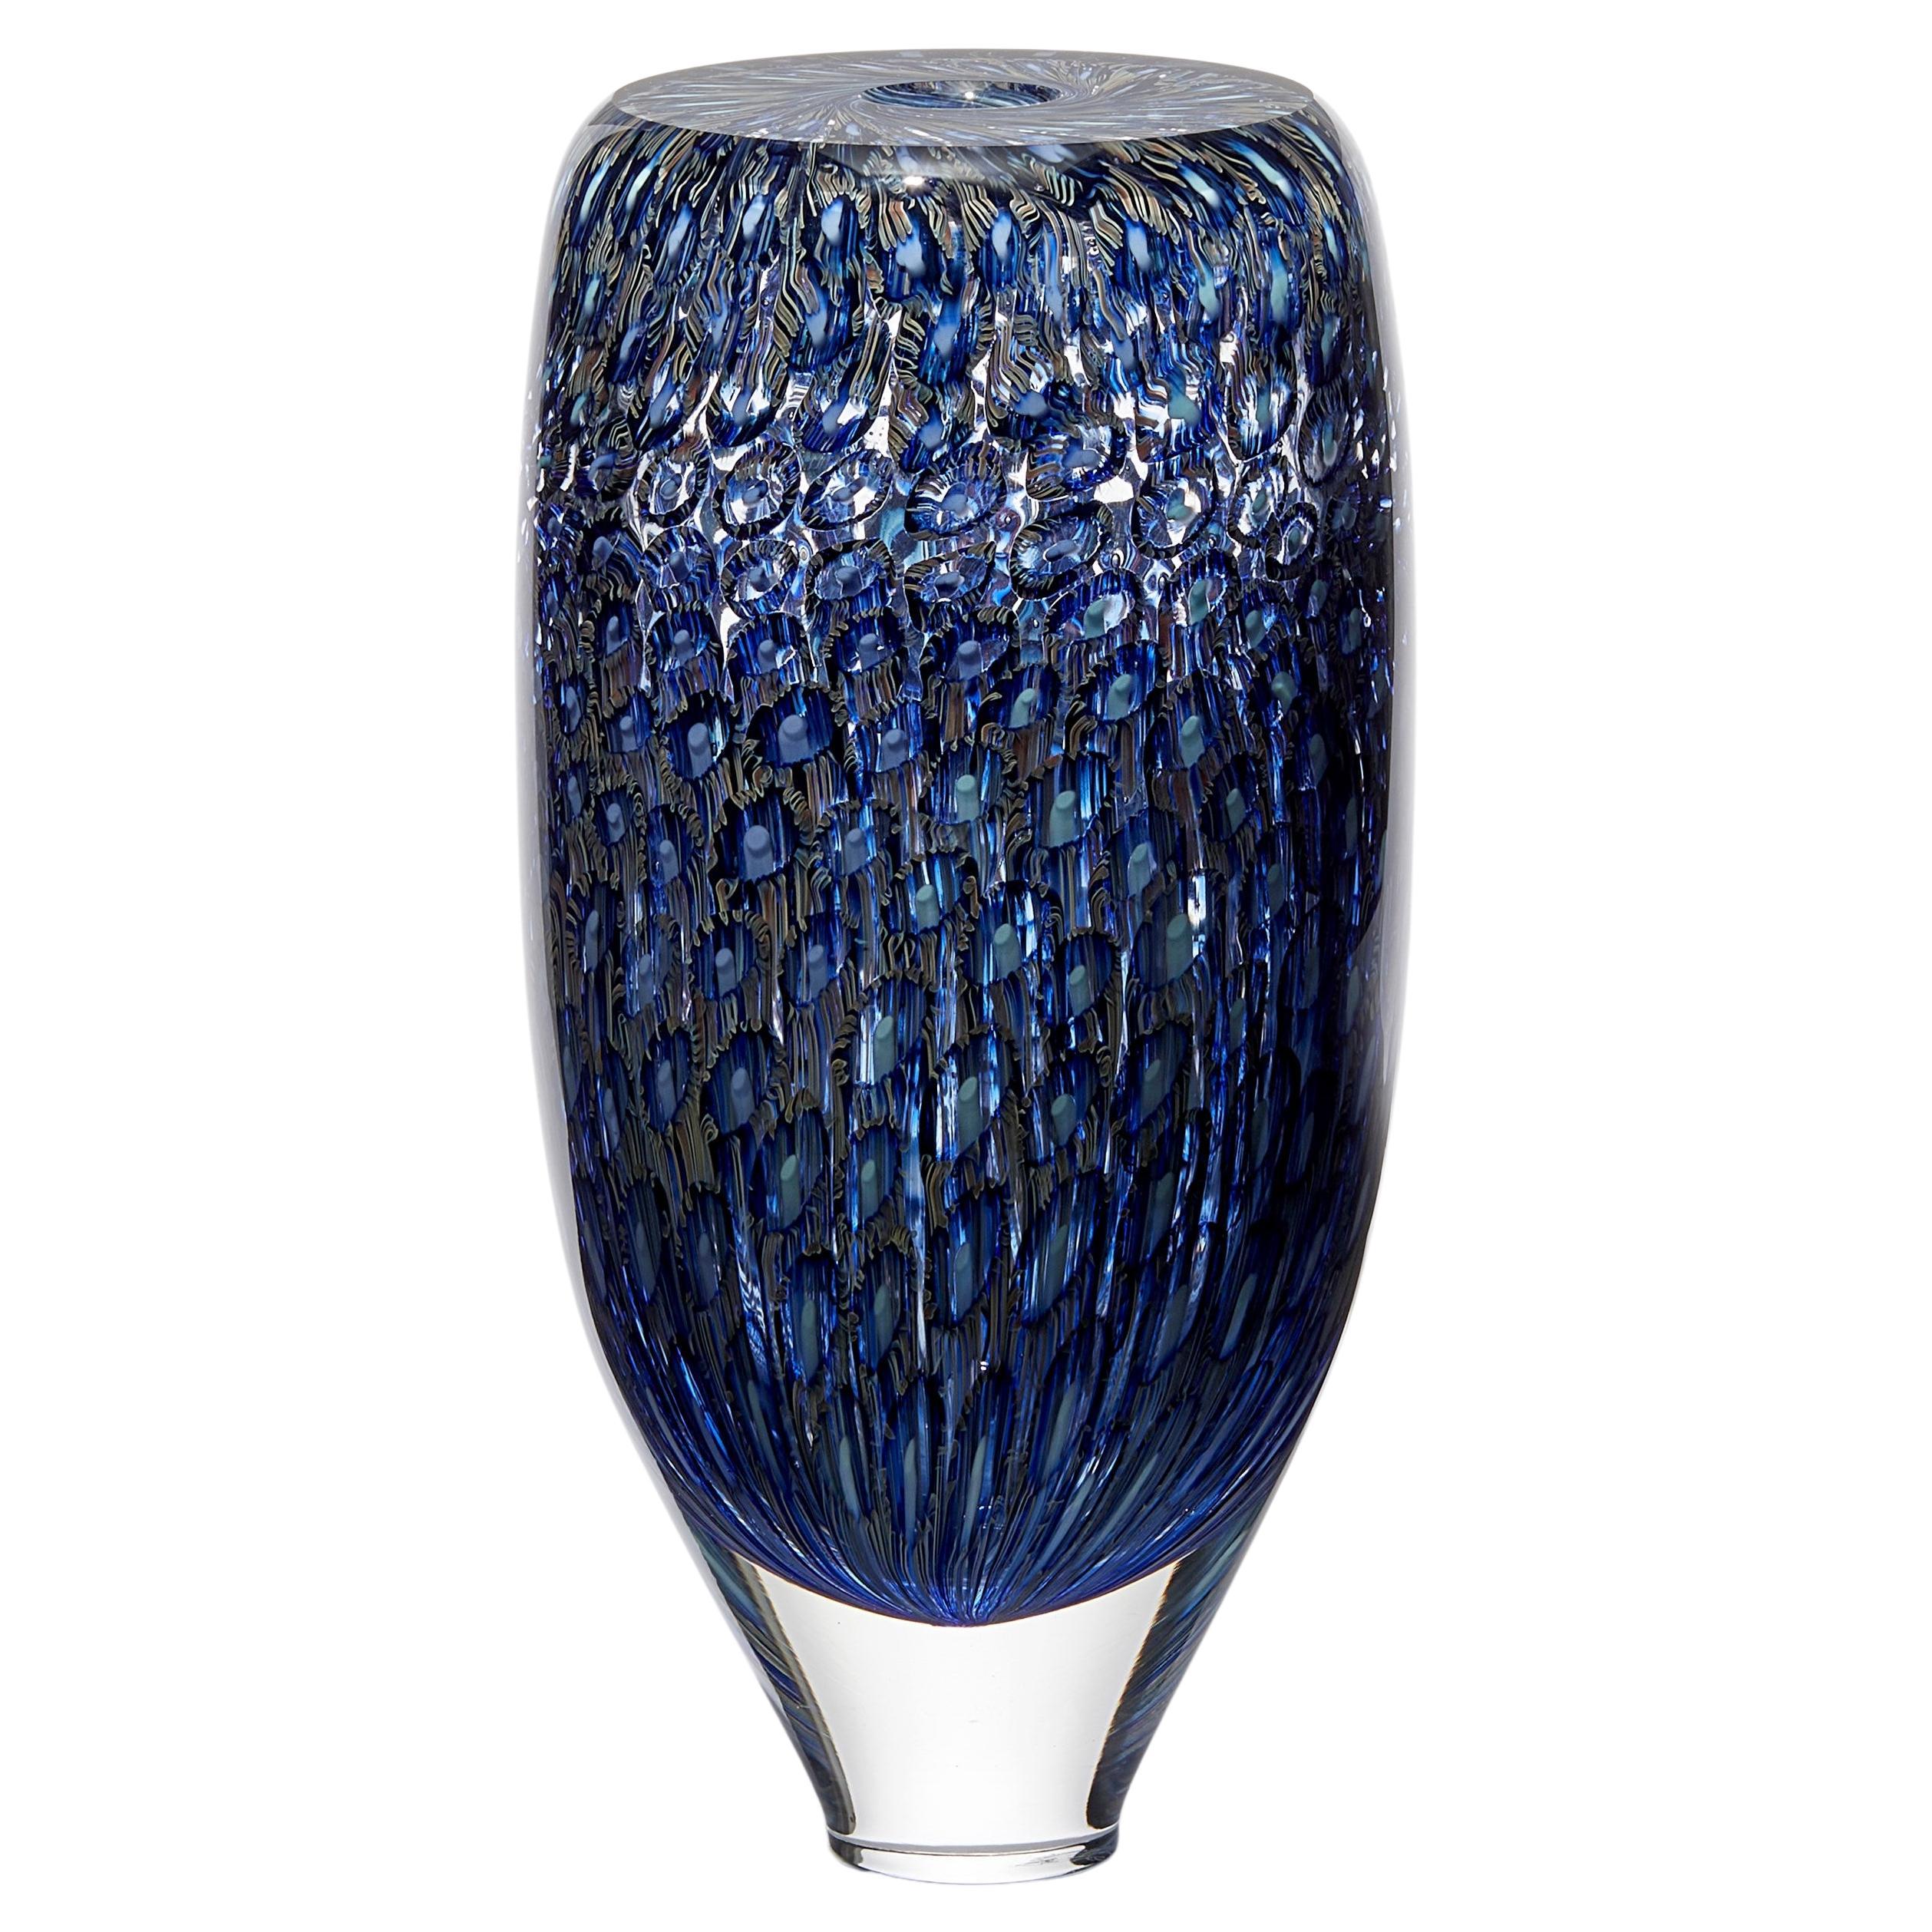 Murrine Quadrants Große Form in Blassblau & Türkis, Vase von Peter Bowles